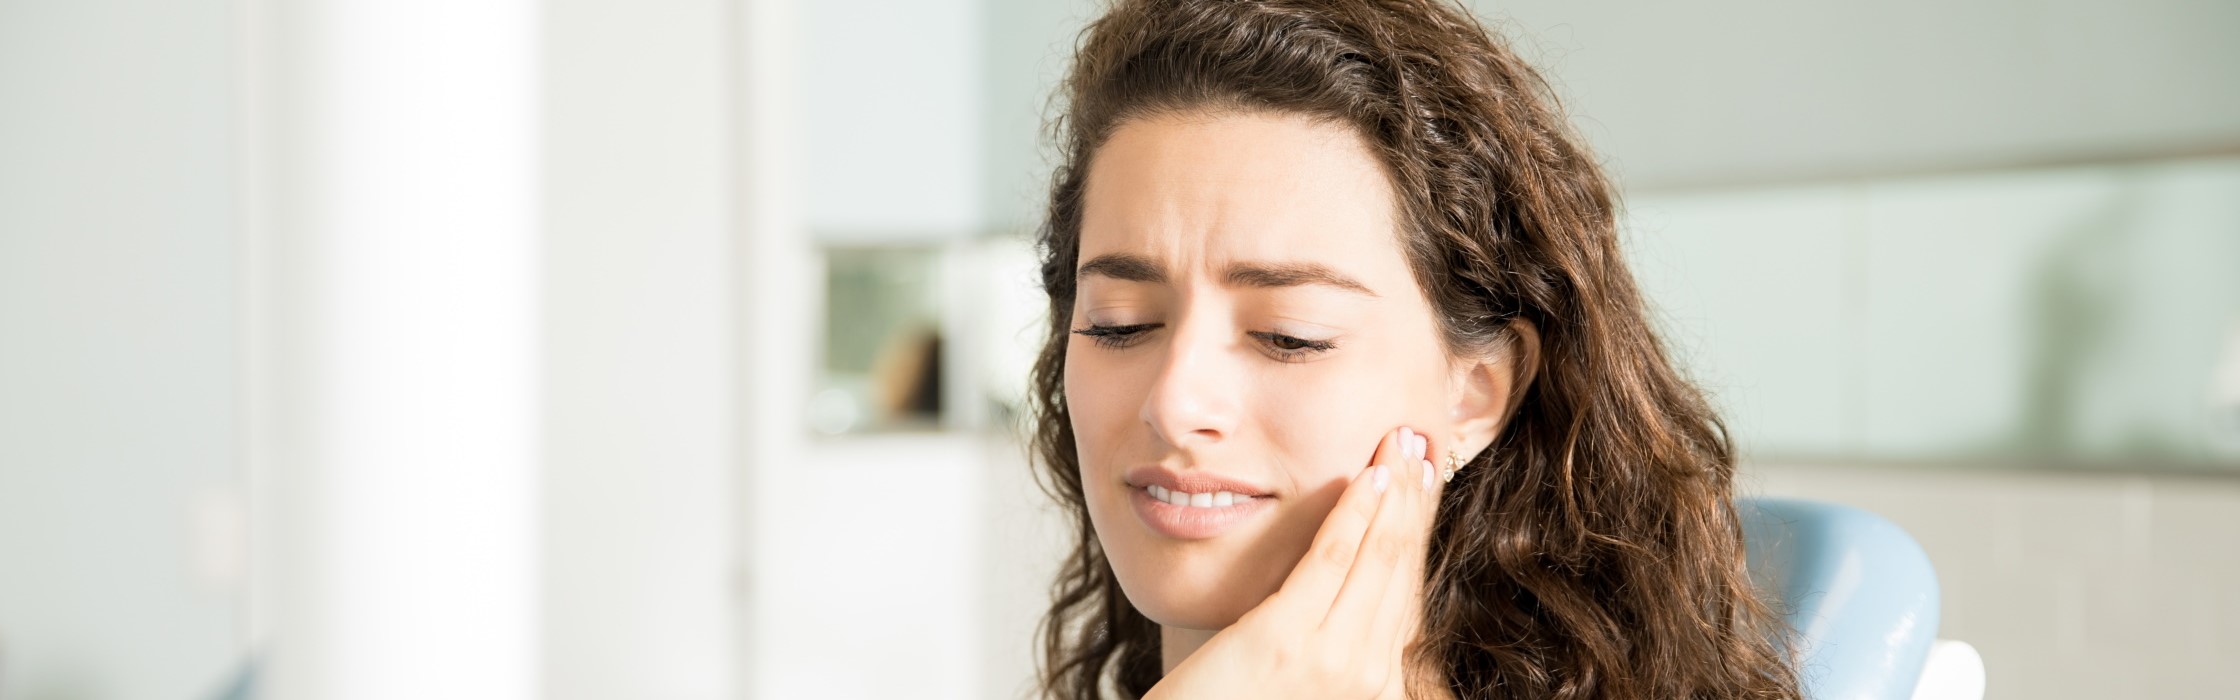 Zahnschmerzen: Ursachen und Behandlung schmerzender Zähne